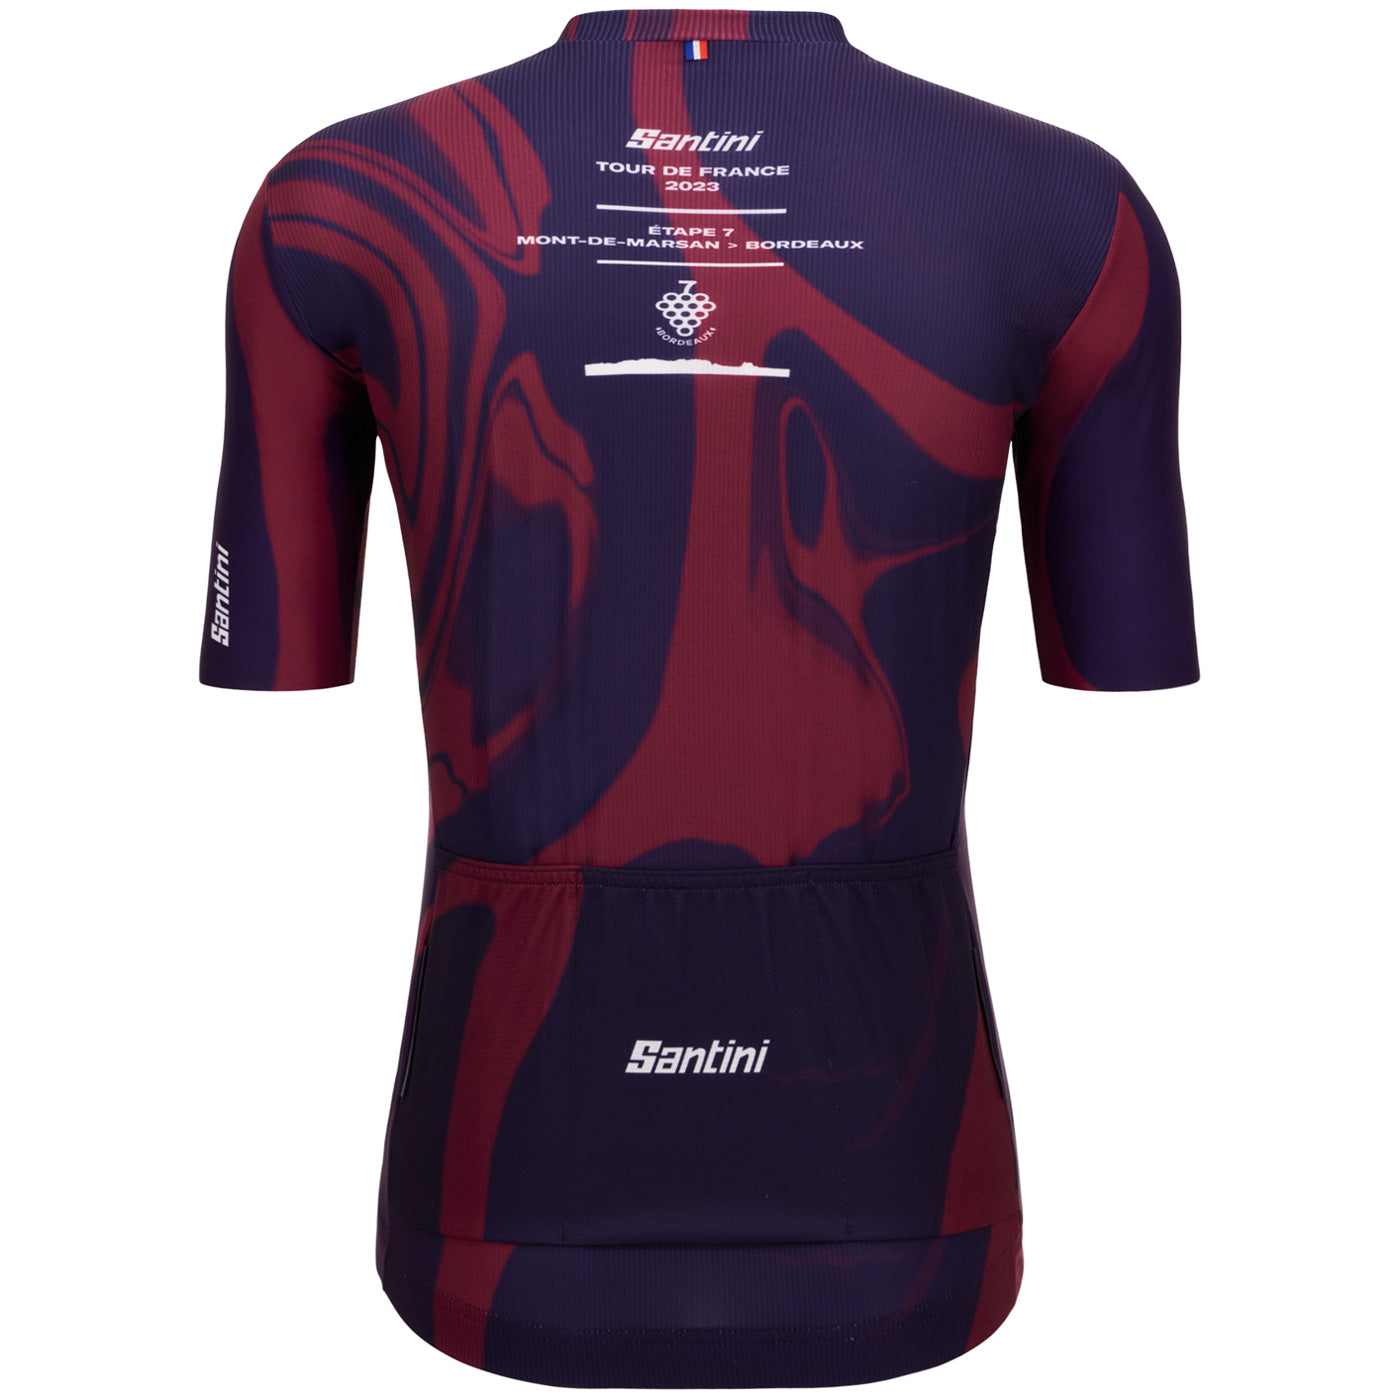 Tour de France jersey - Bordeaux